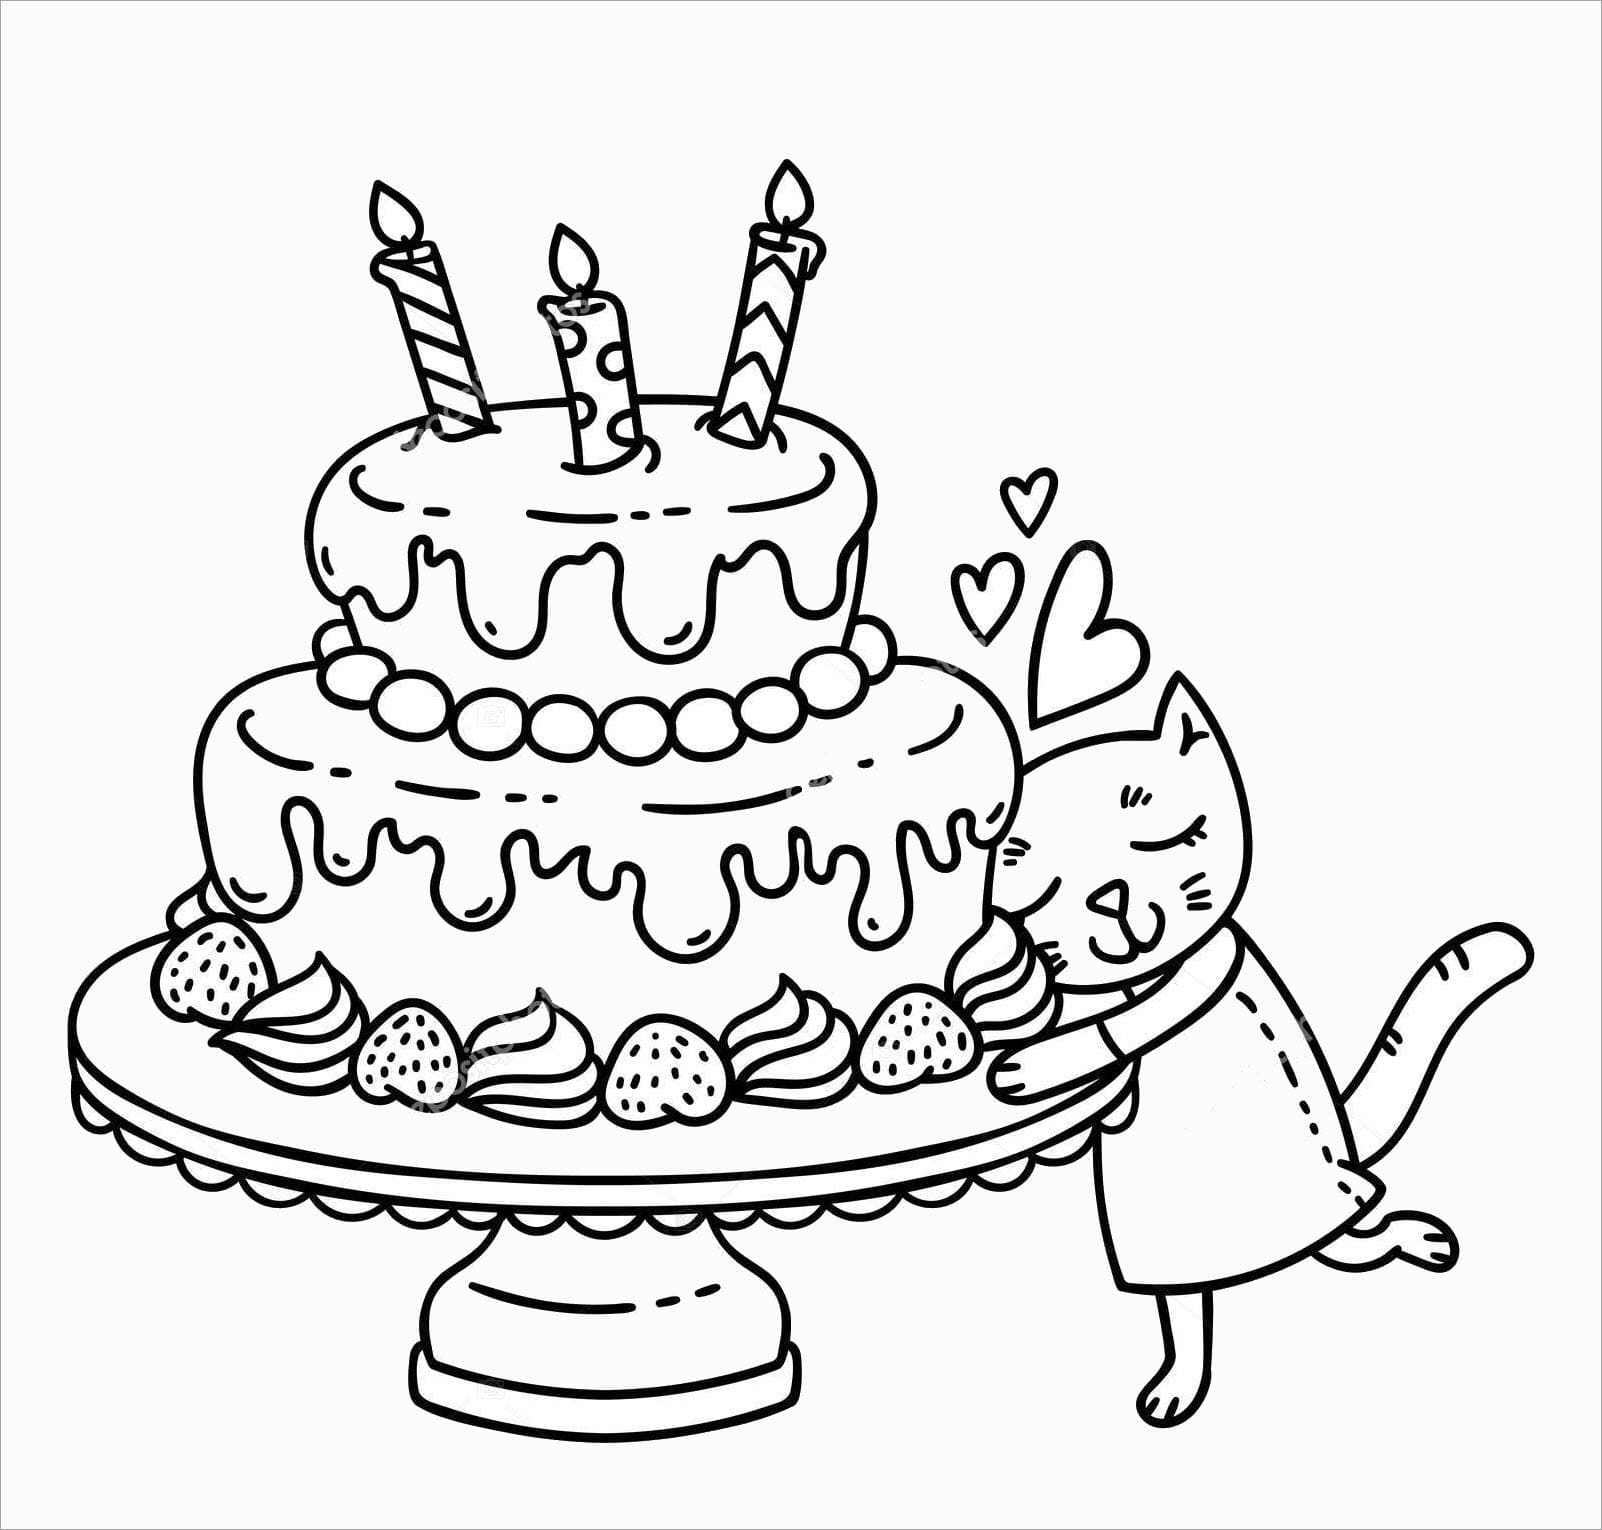 Торт на день рождение раскраска с котом